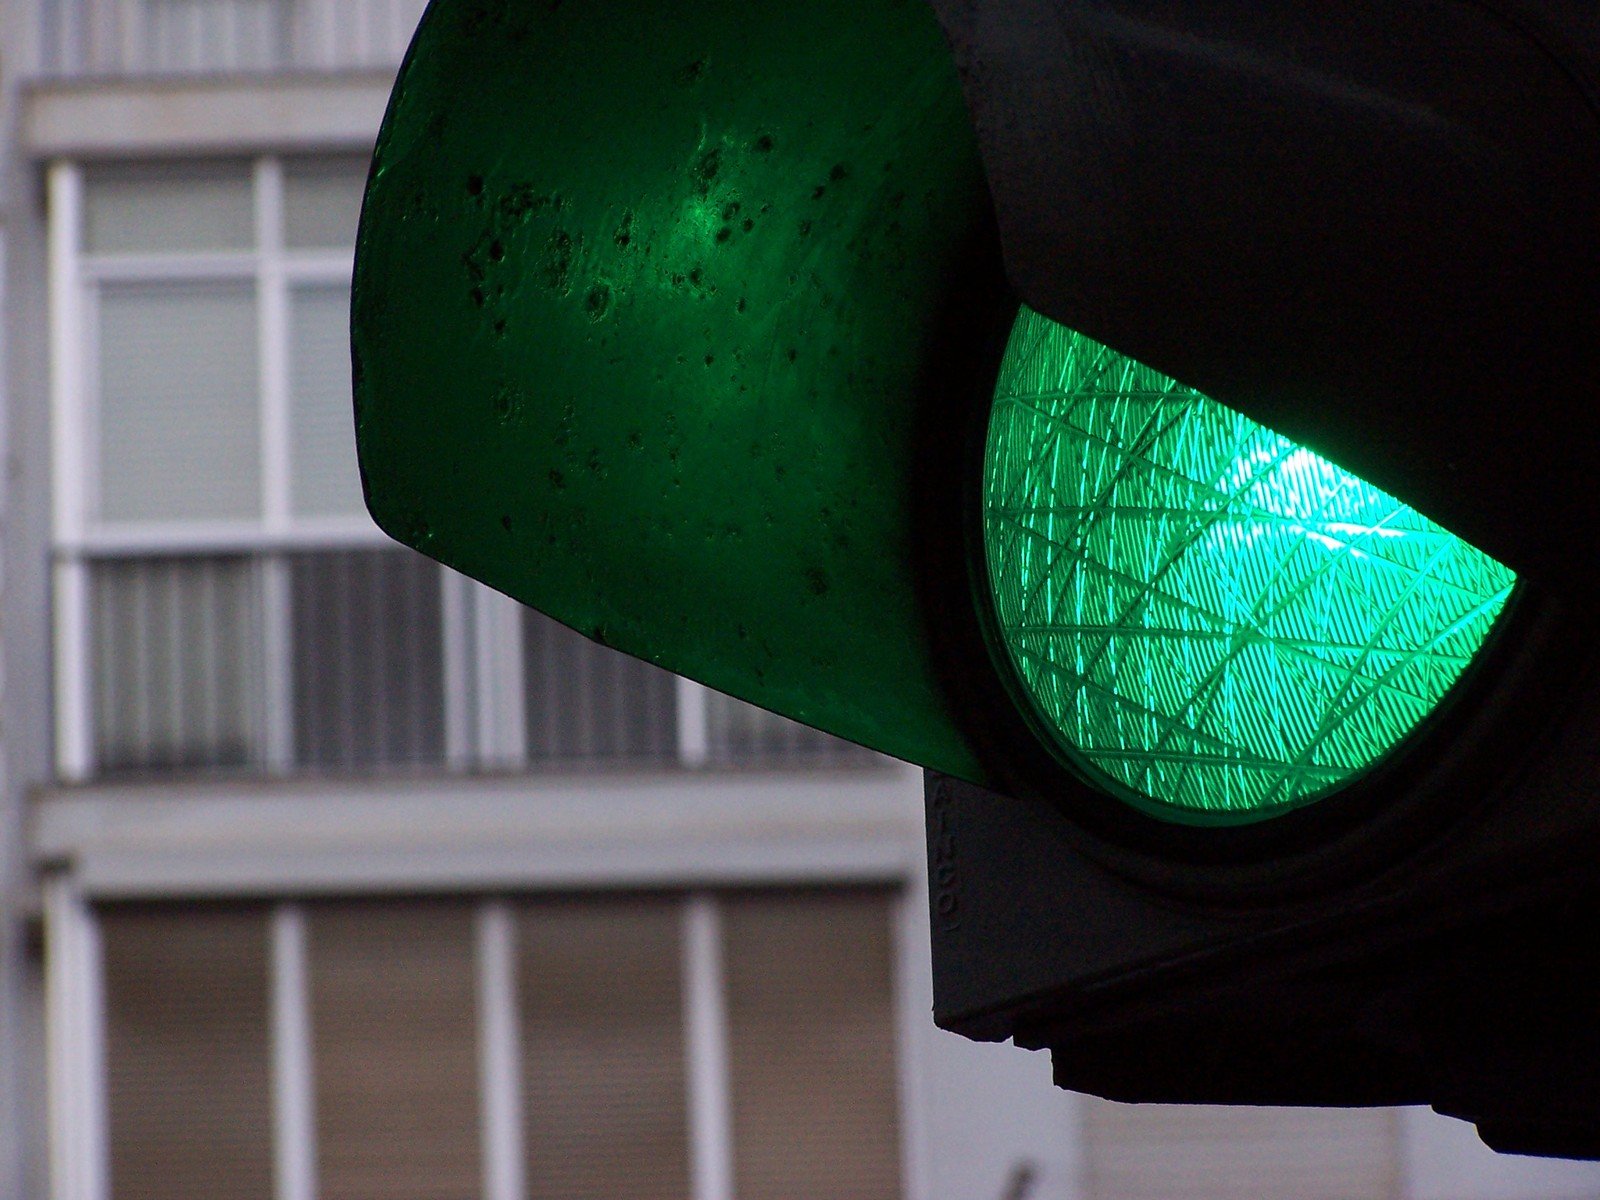 Светофоры всегда зеленые. Зеленый свет. Зеленый сигнал светофора. Зеленый свет светофора. Зеленый цвет светофора.